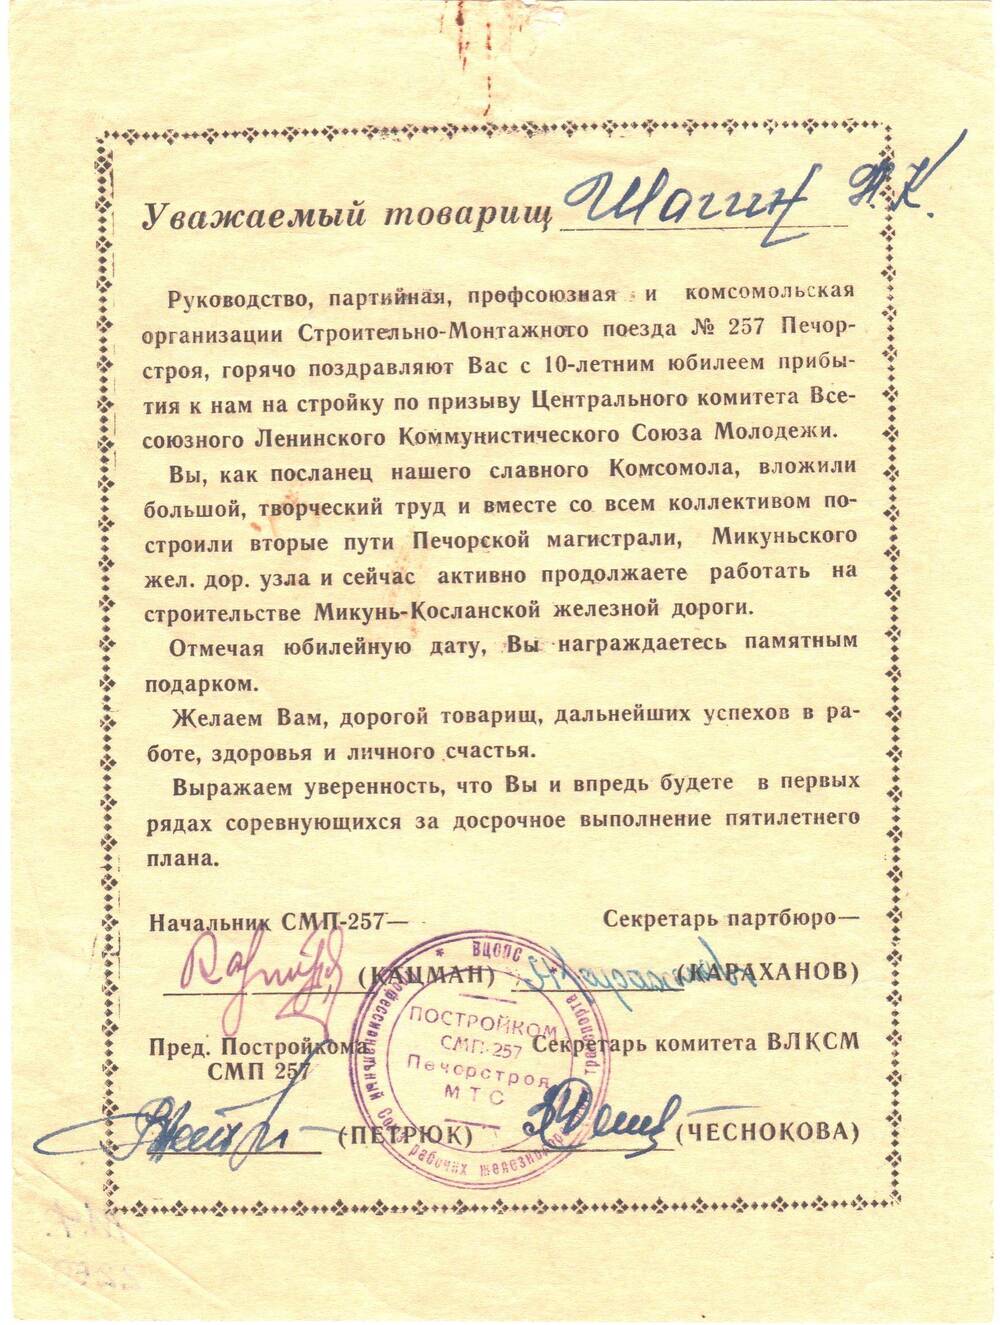 Поздравительное письмо в адрес Шагина Н.К. с 10-летним юбилеем прибывания на стройку по призыву ЦК ВЛКСМ.